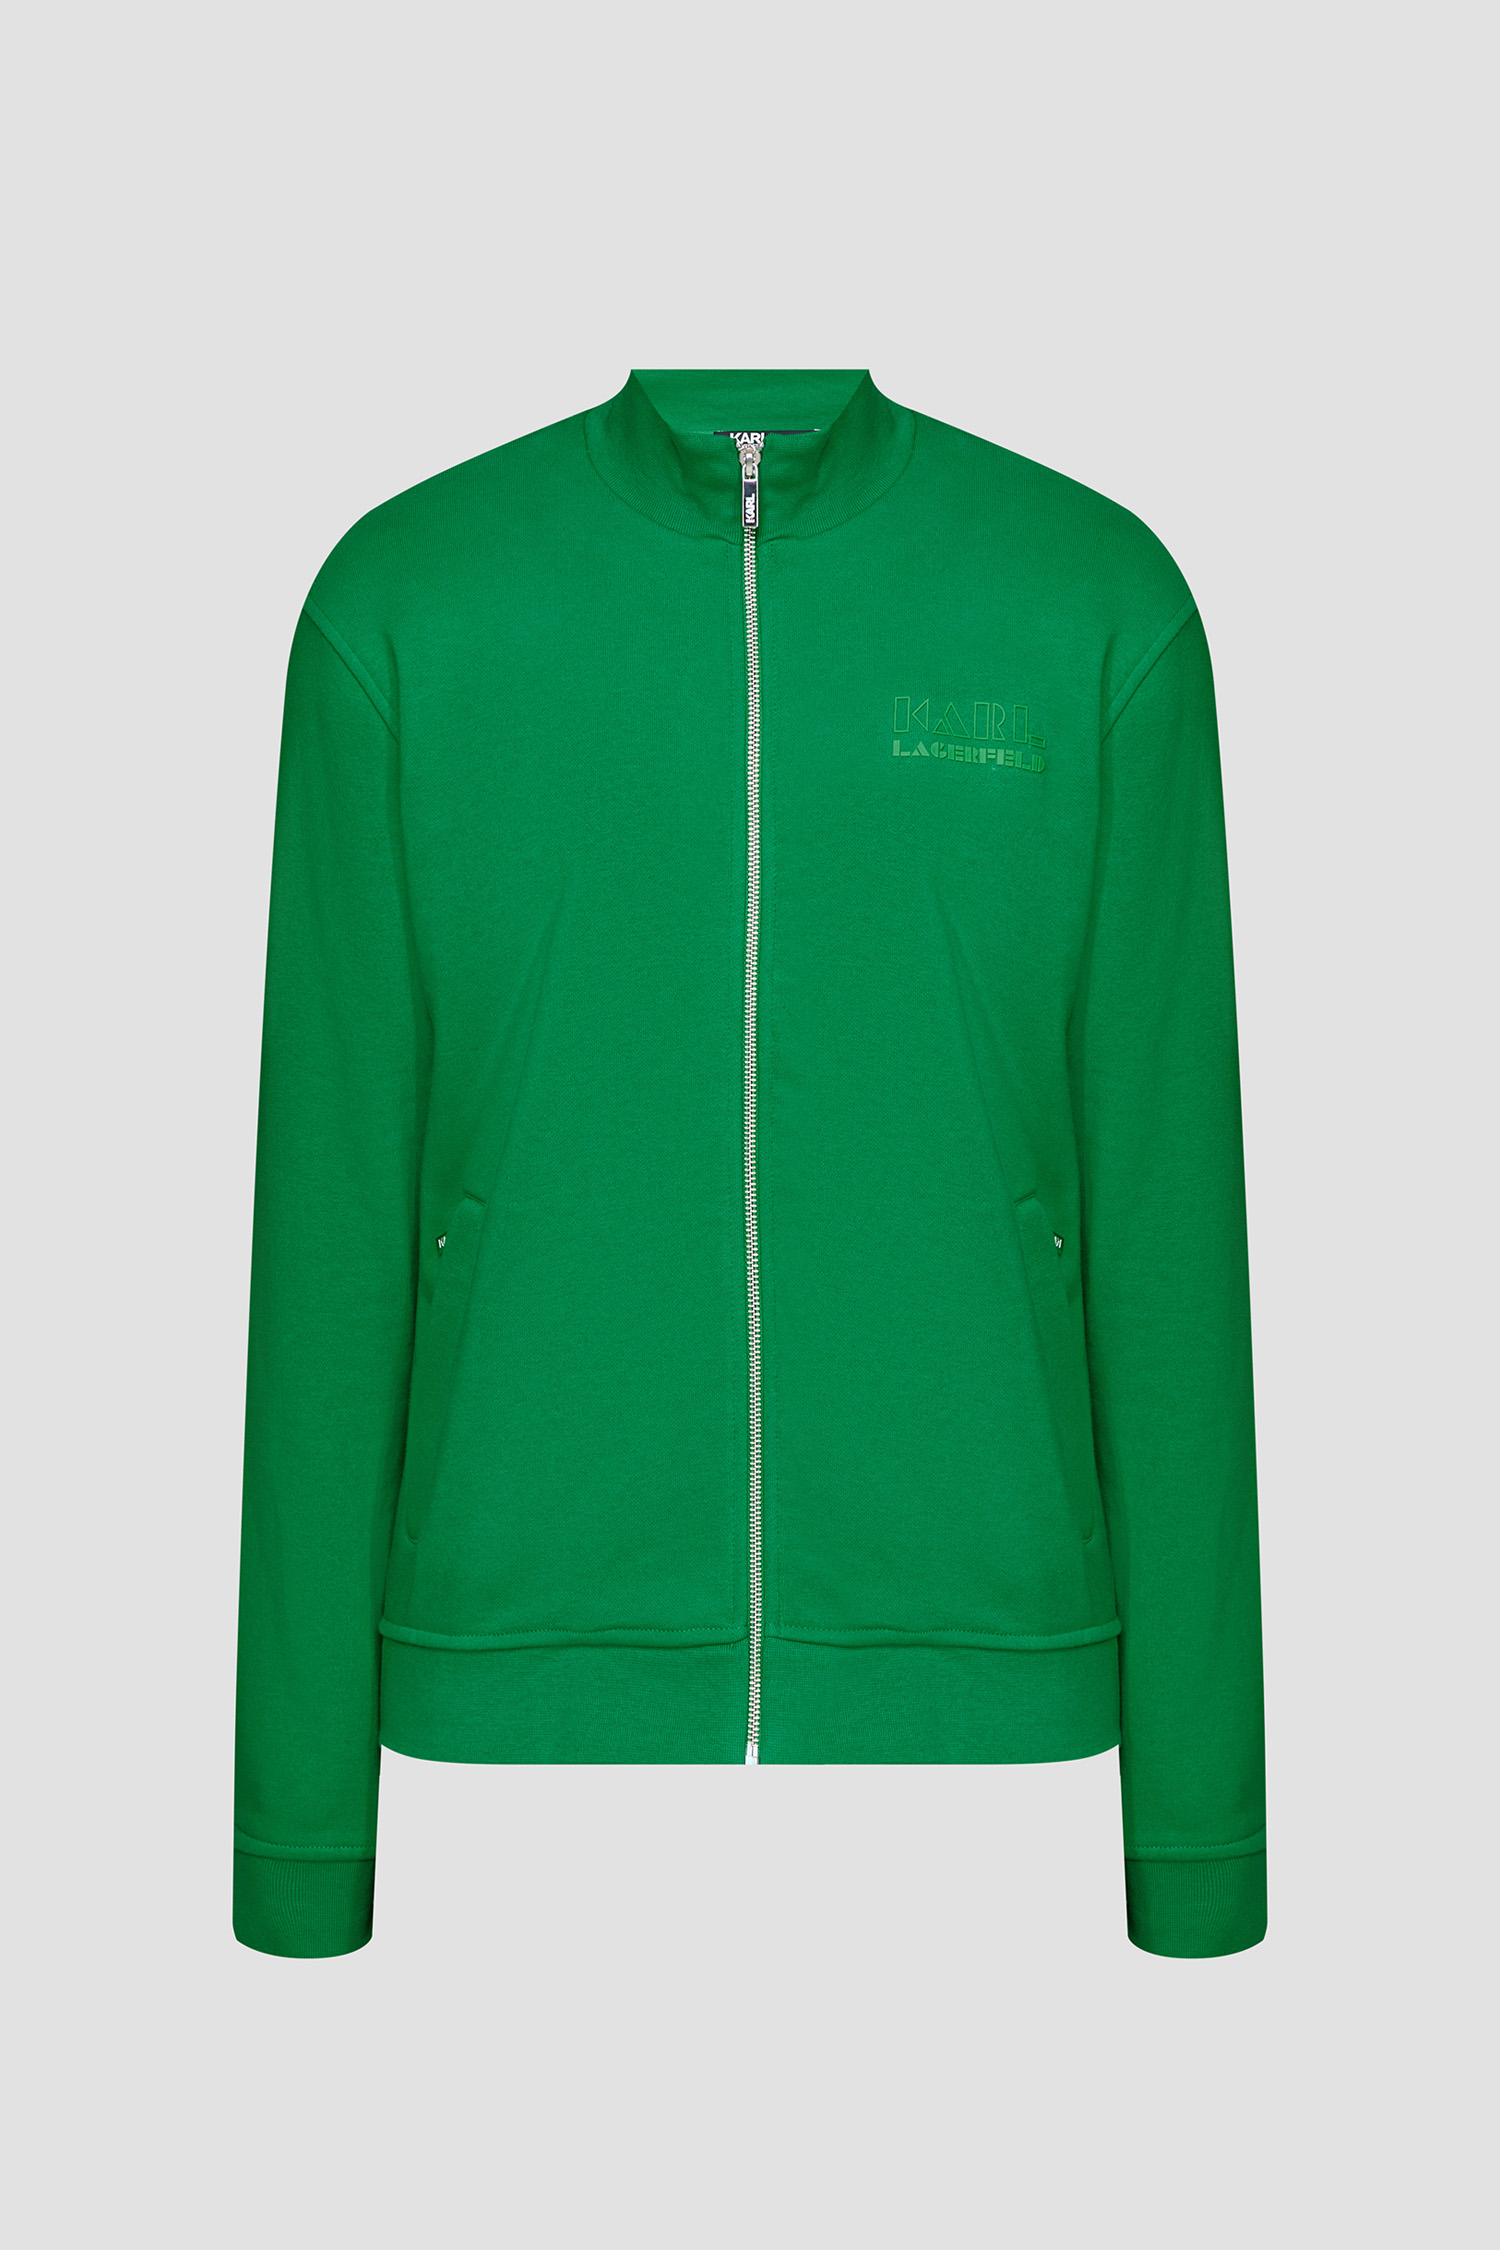 Чоловіча зелена спортивна кофта Karl Lagerfeld 533910.705070;530